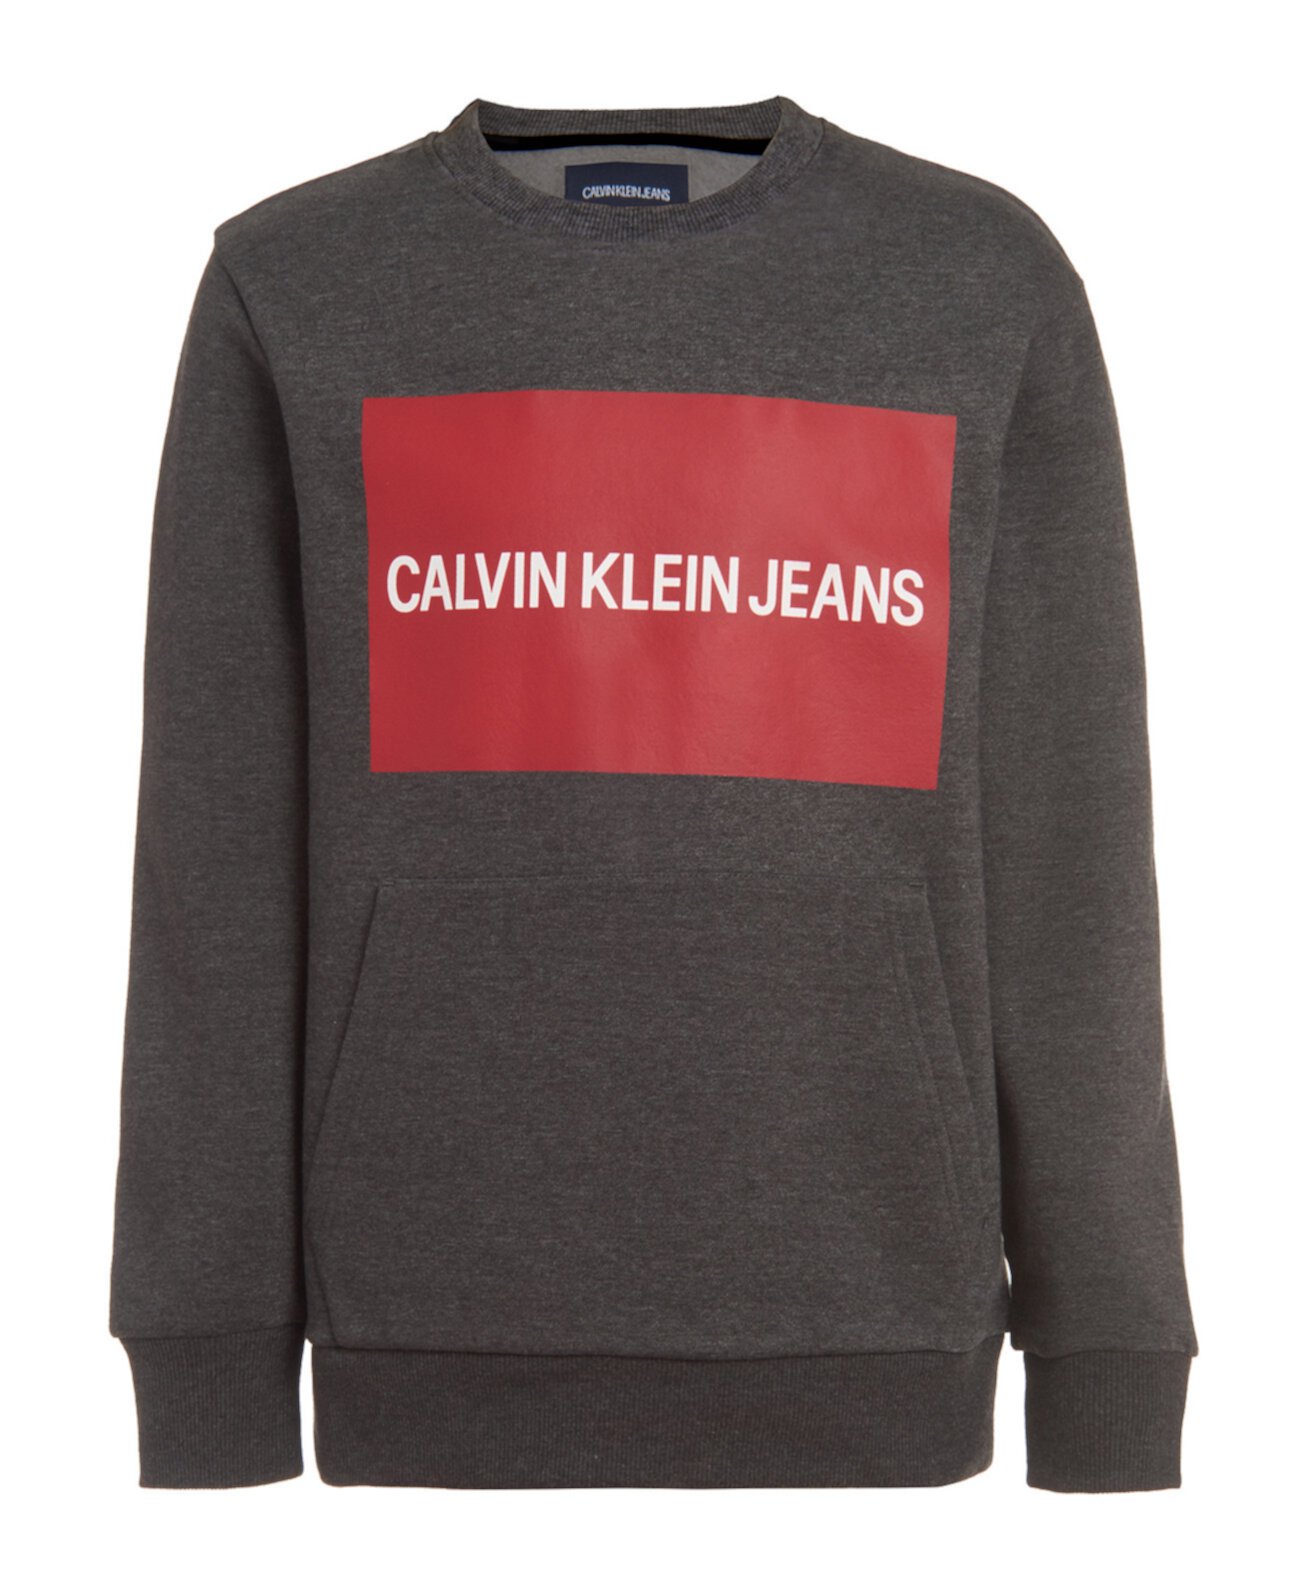 Свитшот с длинными рукавами и круглым вырезом Big Boys Institution Calvin Klein